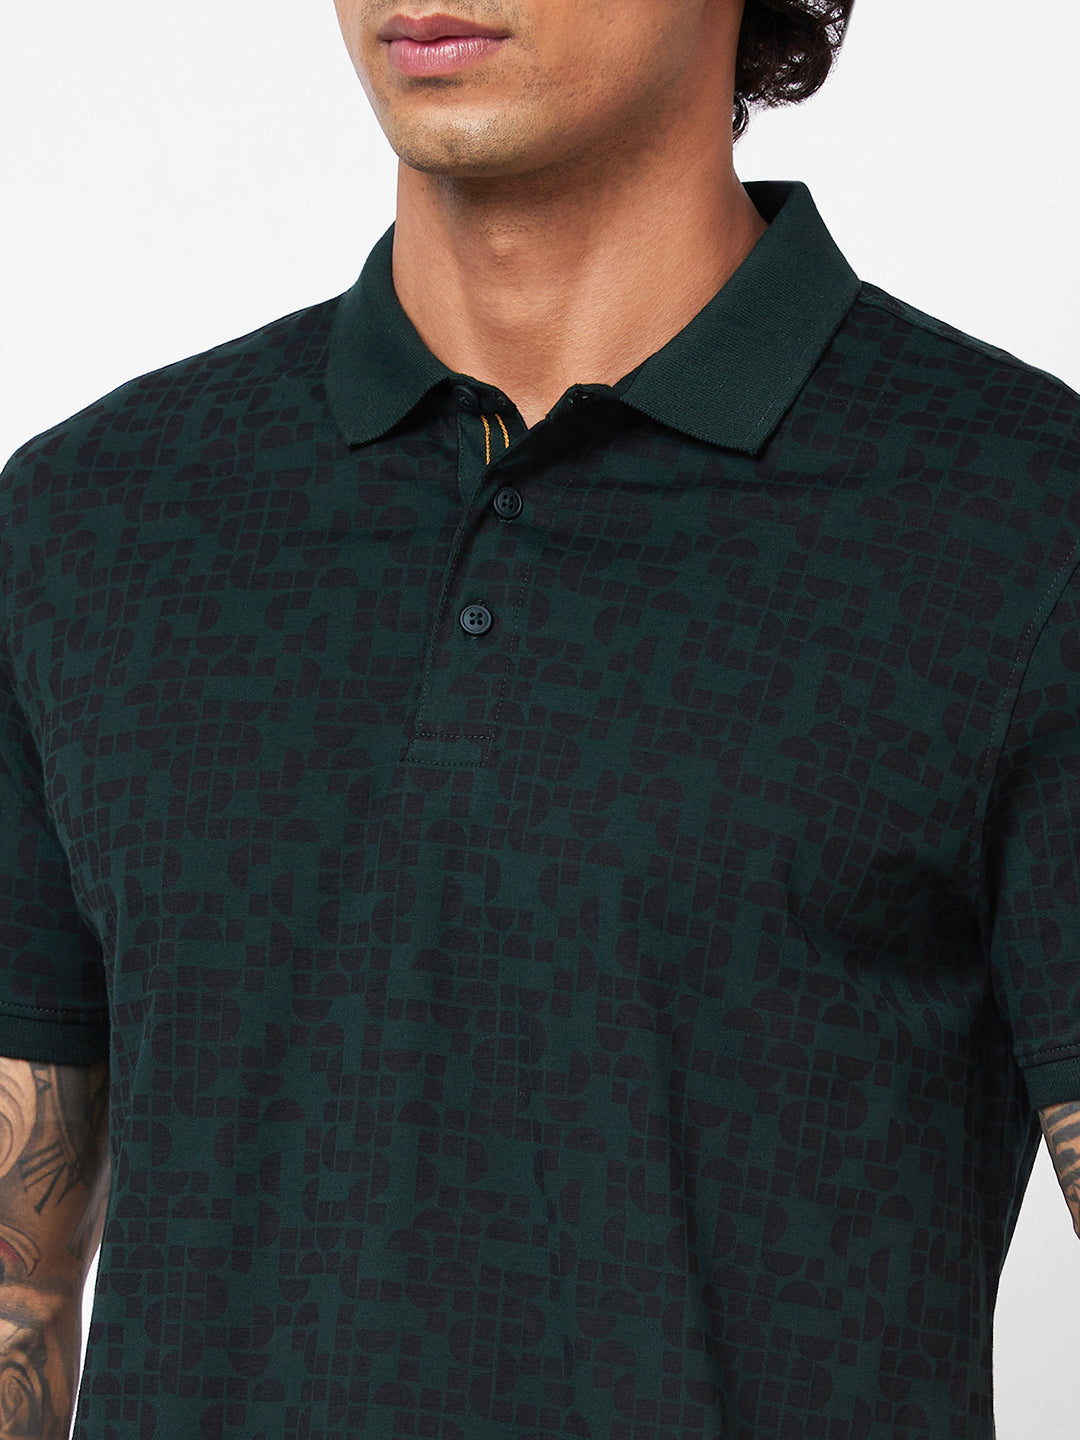 Spykar Polo Collar Half Sleeves Green T-Shirt For Men